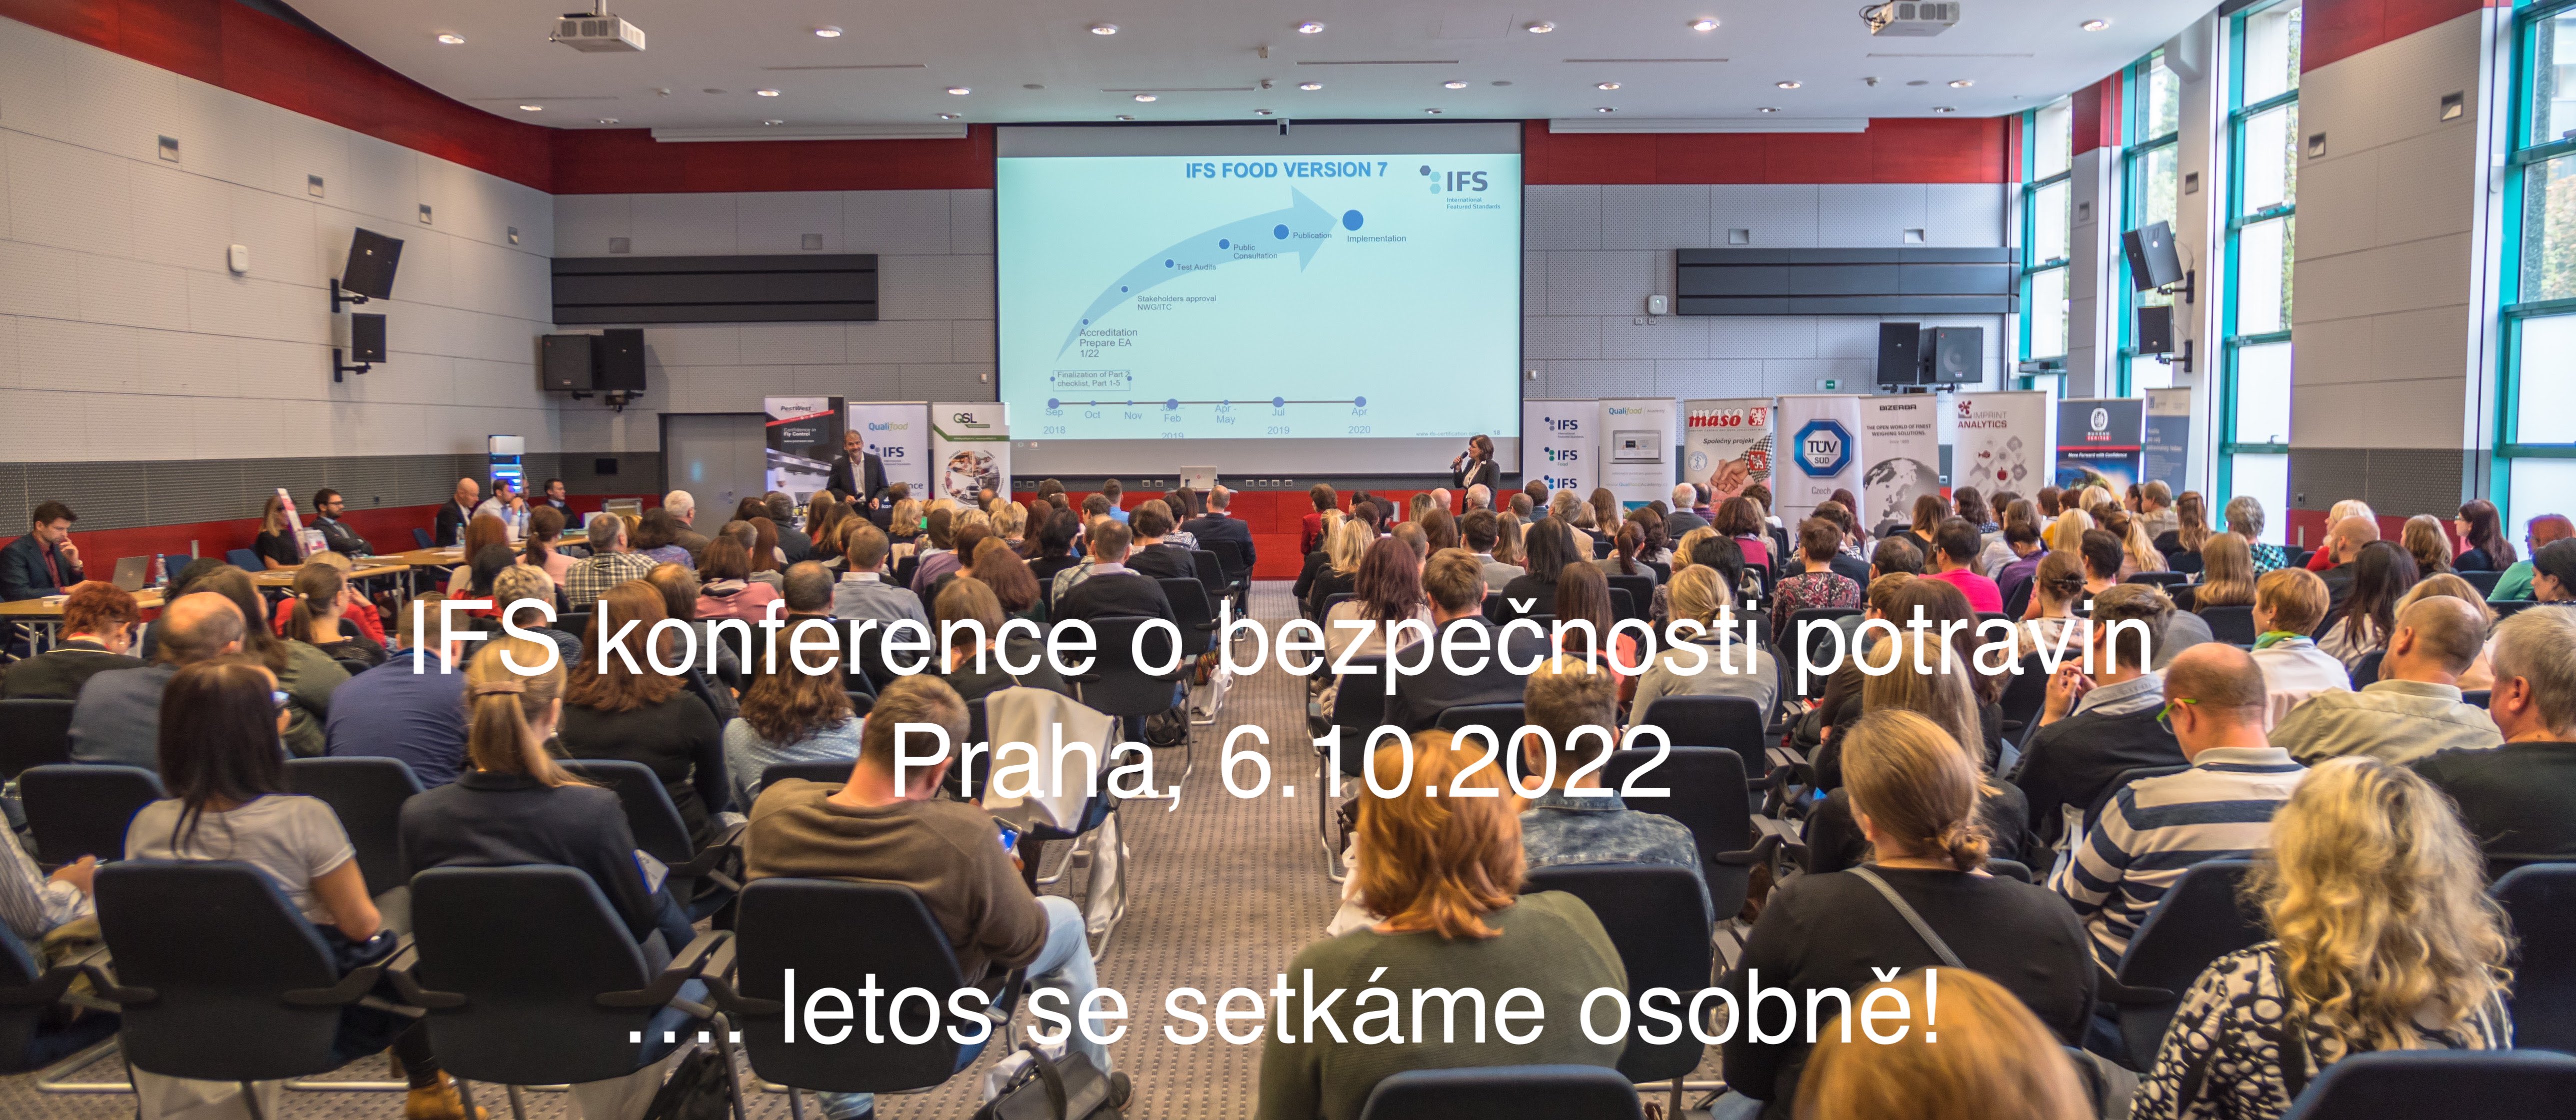 IFS konference 6.10.2022